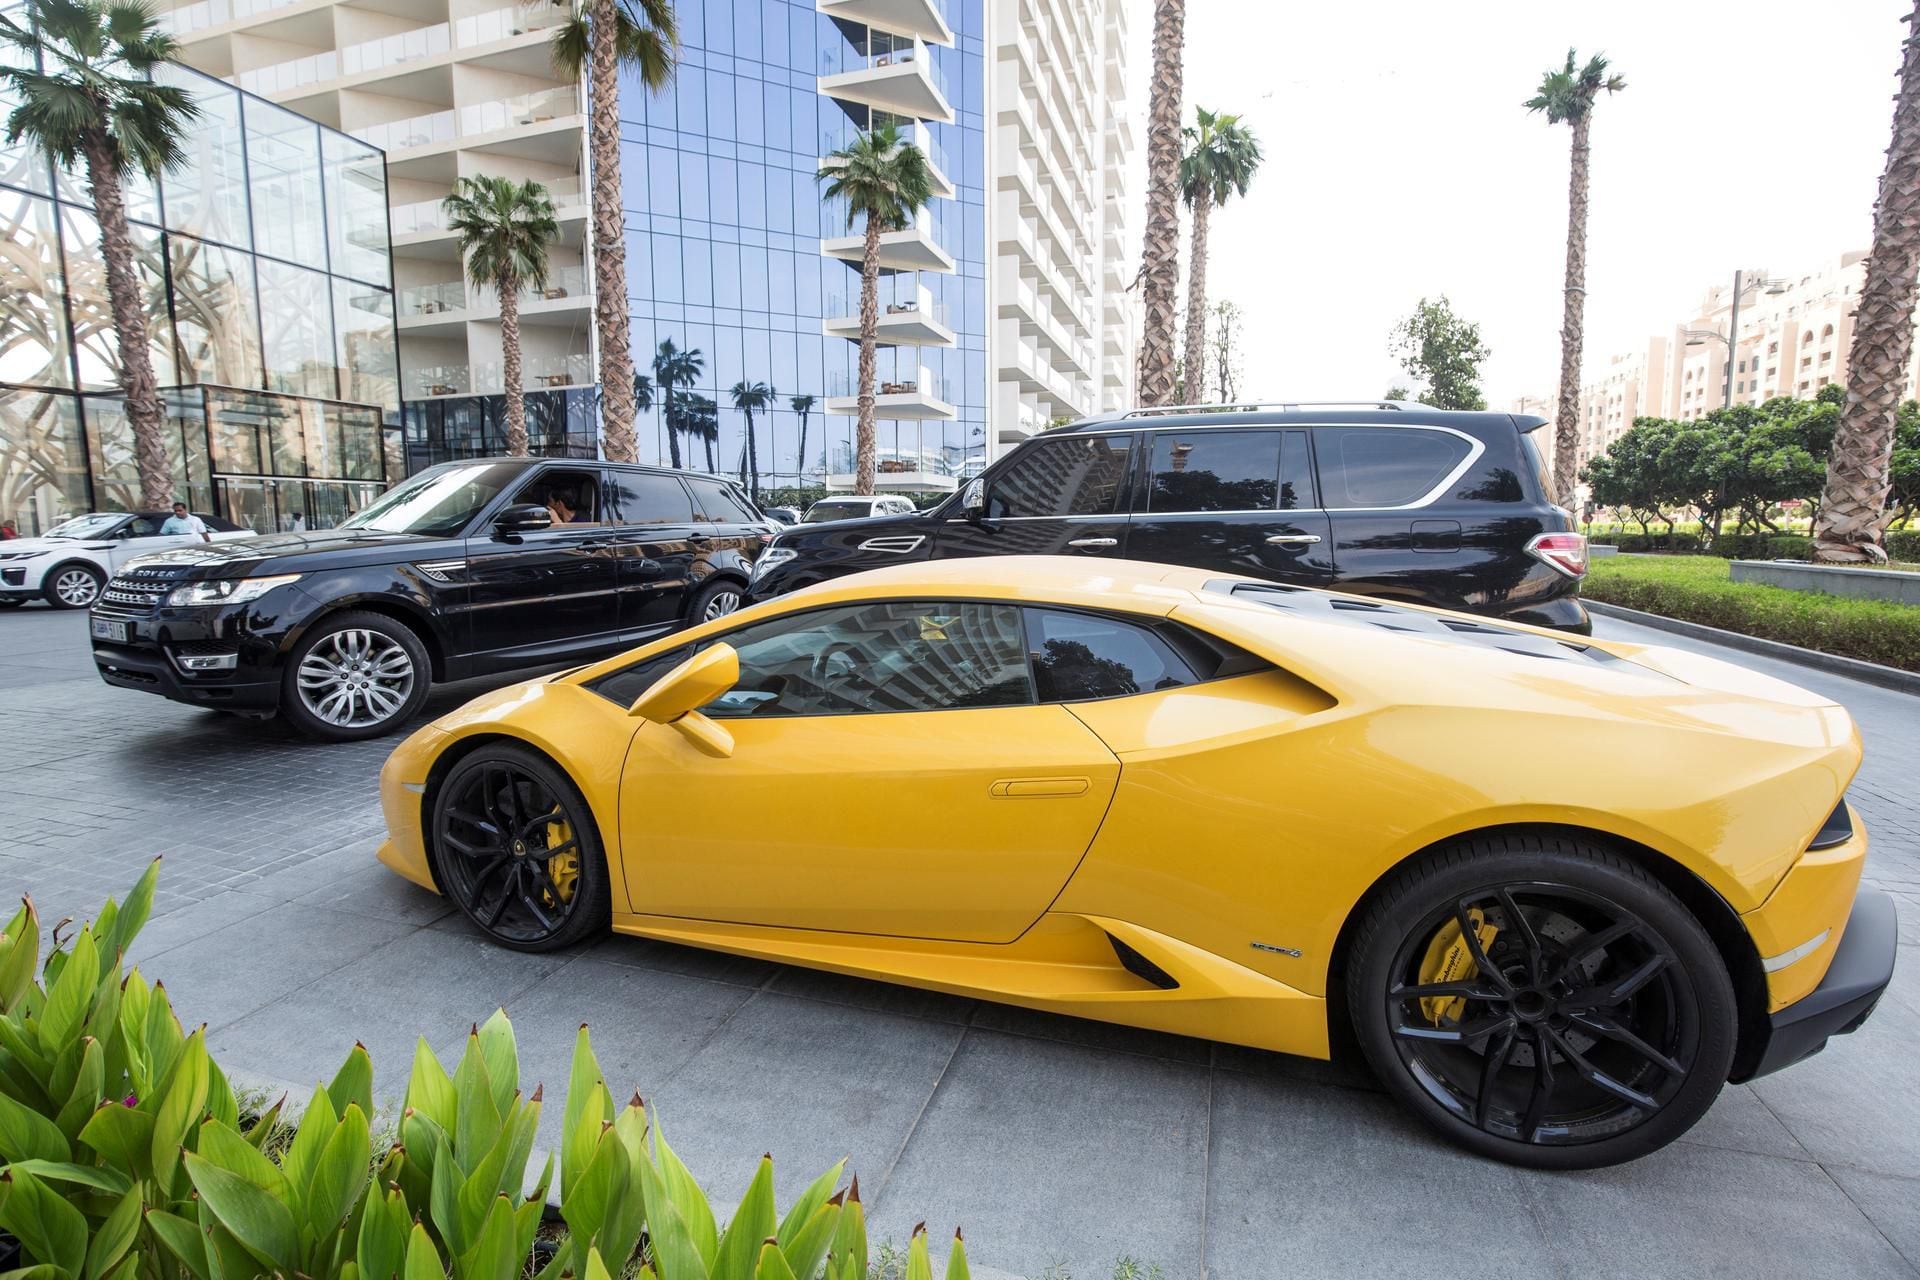 Found: The Lamborghini at the centre of British tourist's Dh170,000  speeding fine gathers dust outside Dubai hotel